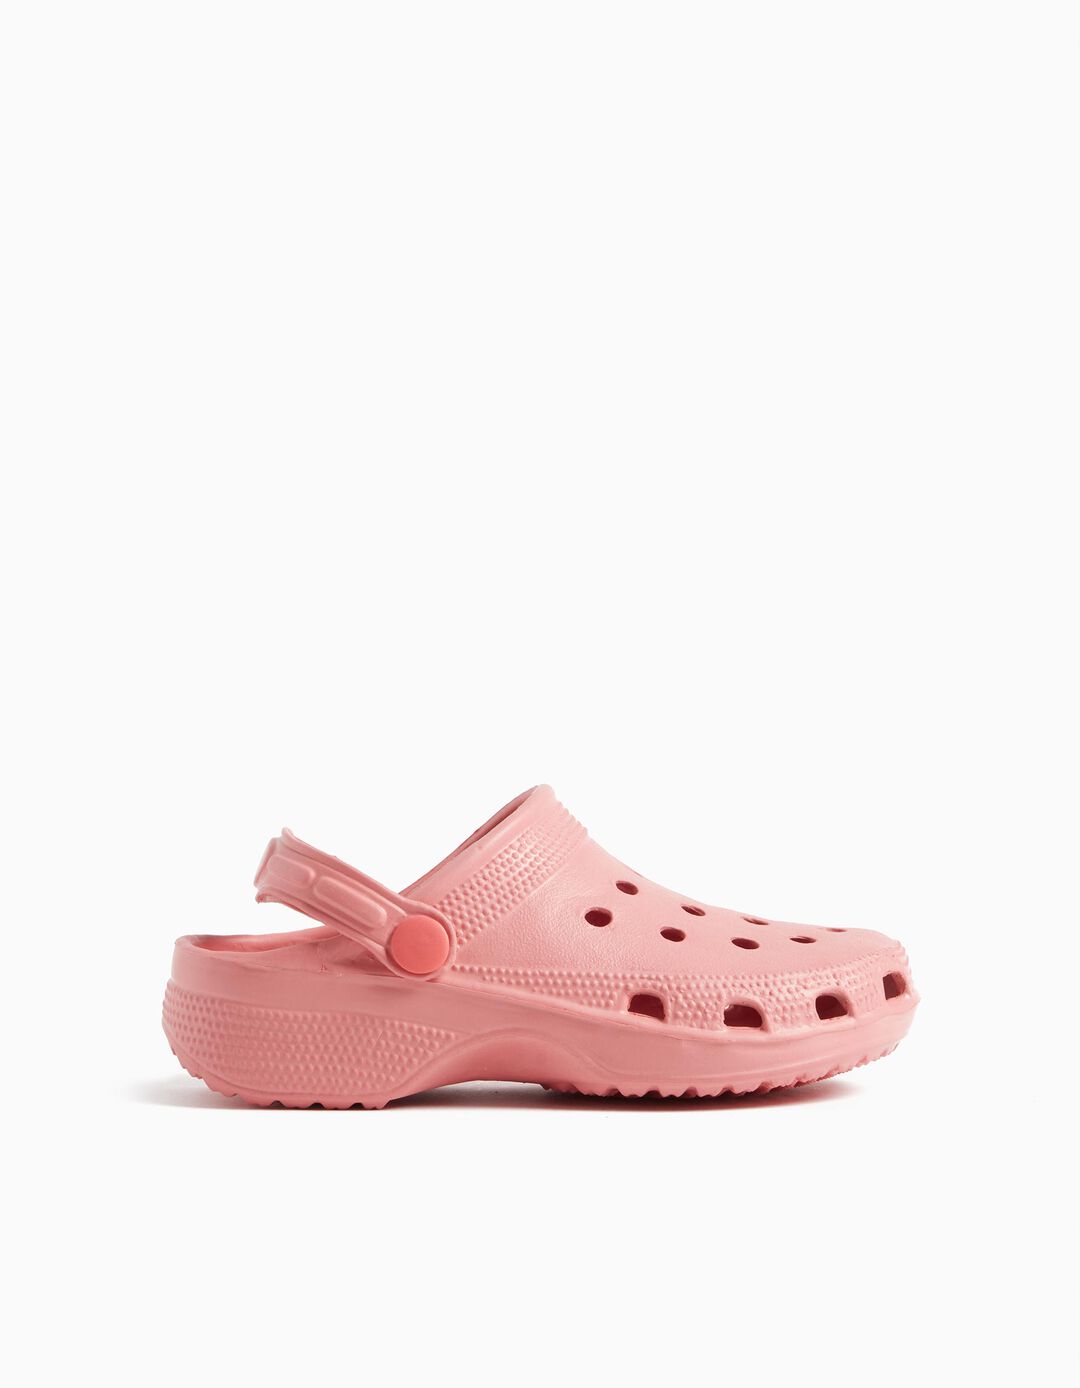 Clog Sandals, Girls, Light Pink